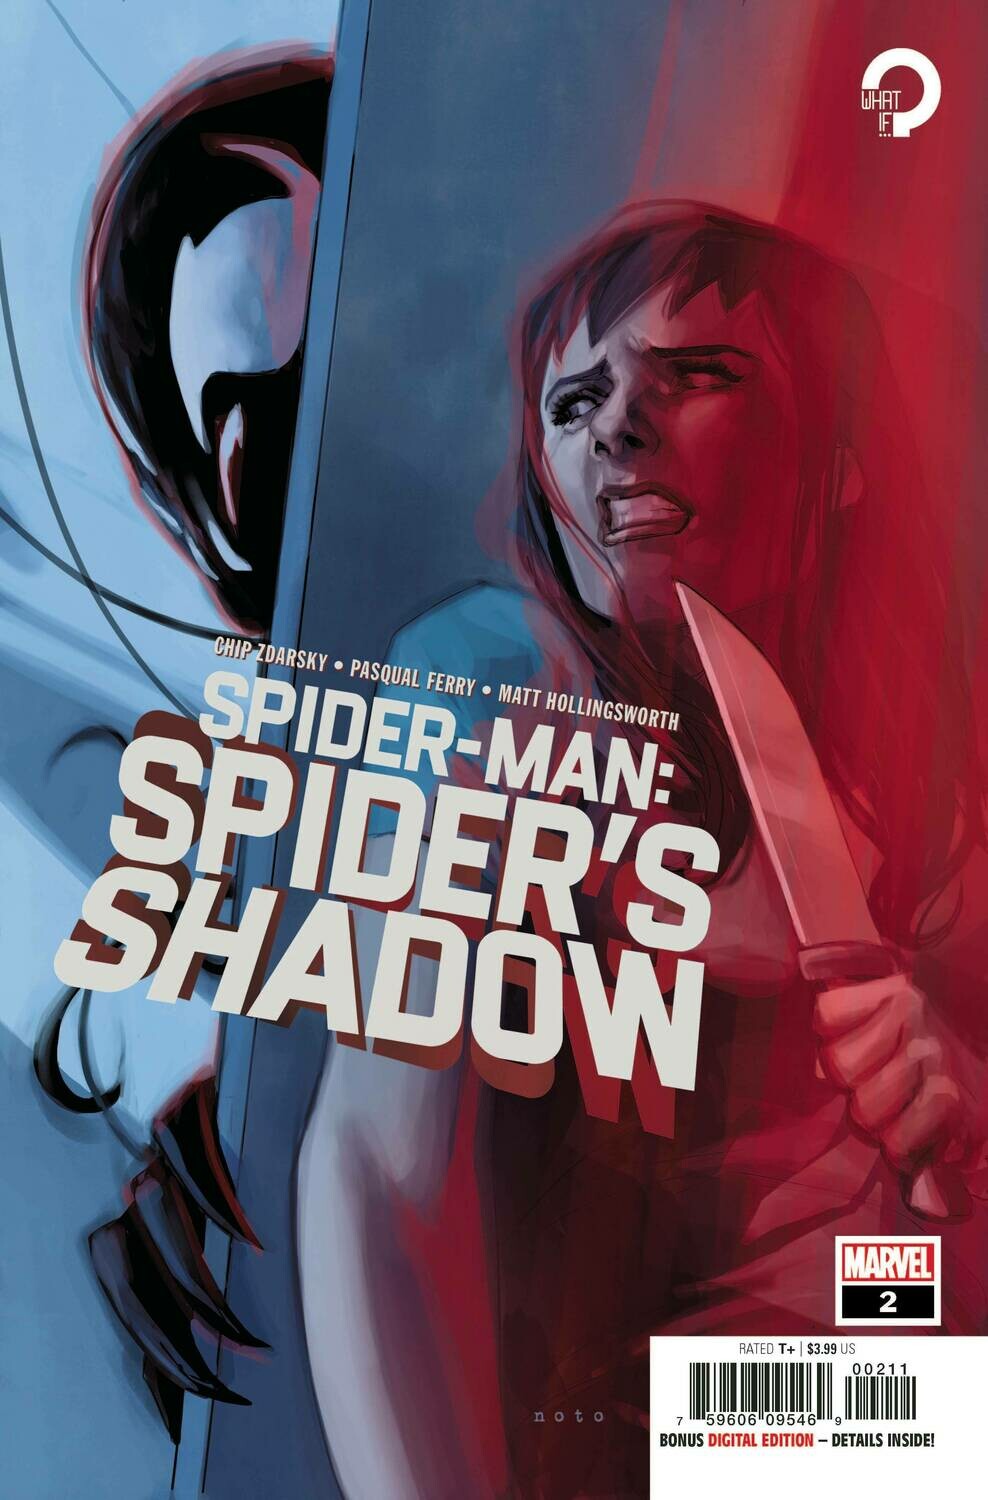 SPIDER-MAN SPIDERS SHADOW #2